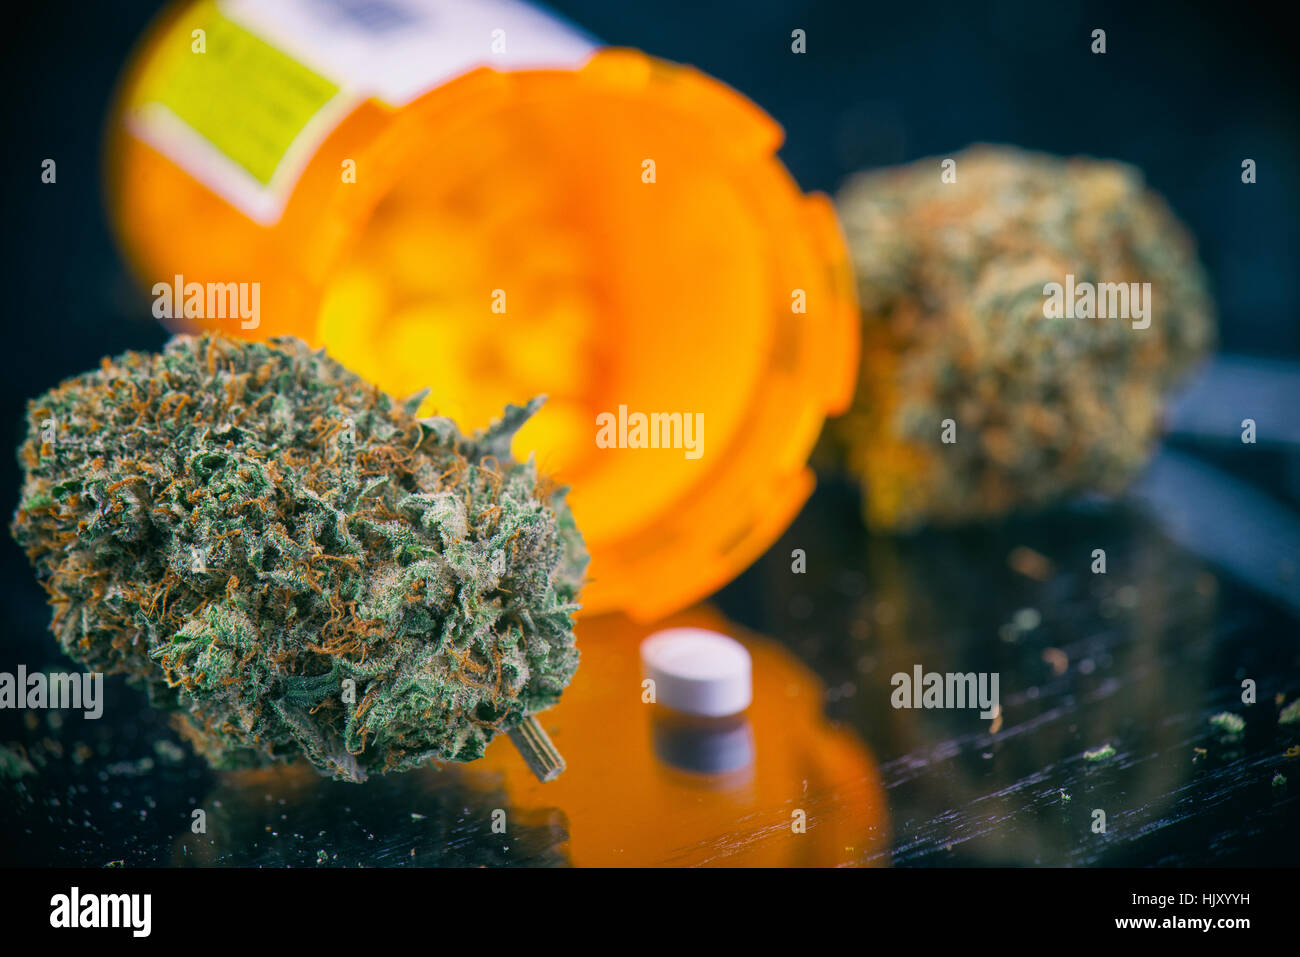 Detalle de brotes de cannabis y prescripciones píldoras más de superficie reflectante - Concepto de dispensario de marihuana medicinal Foto de stock